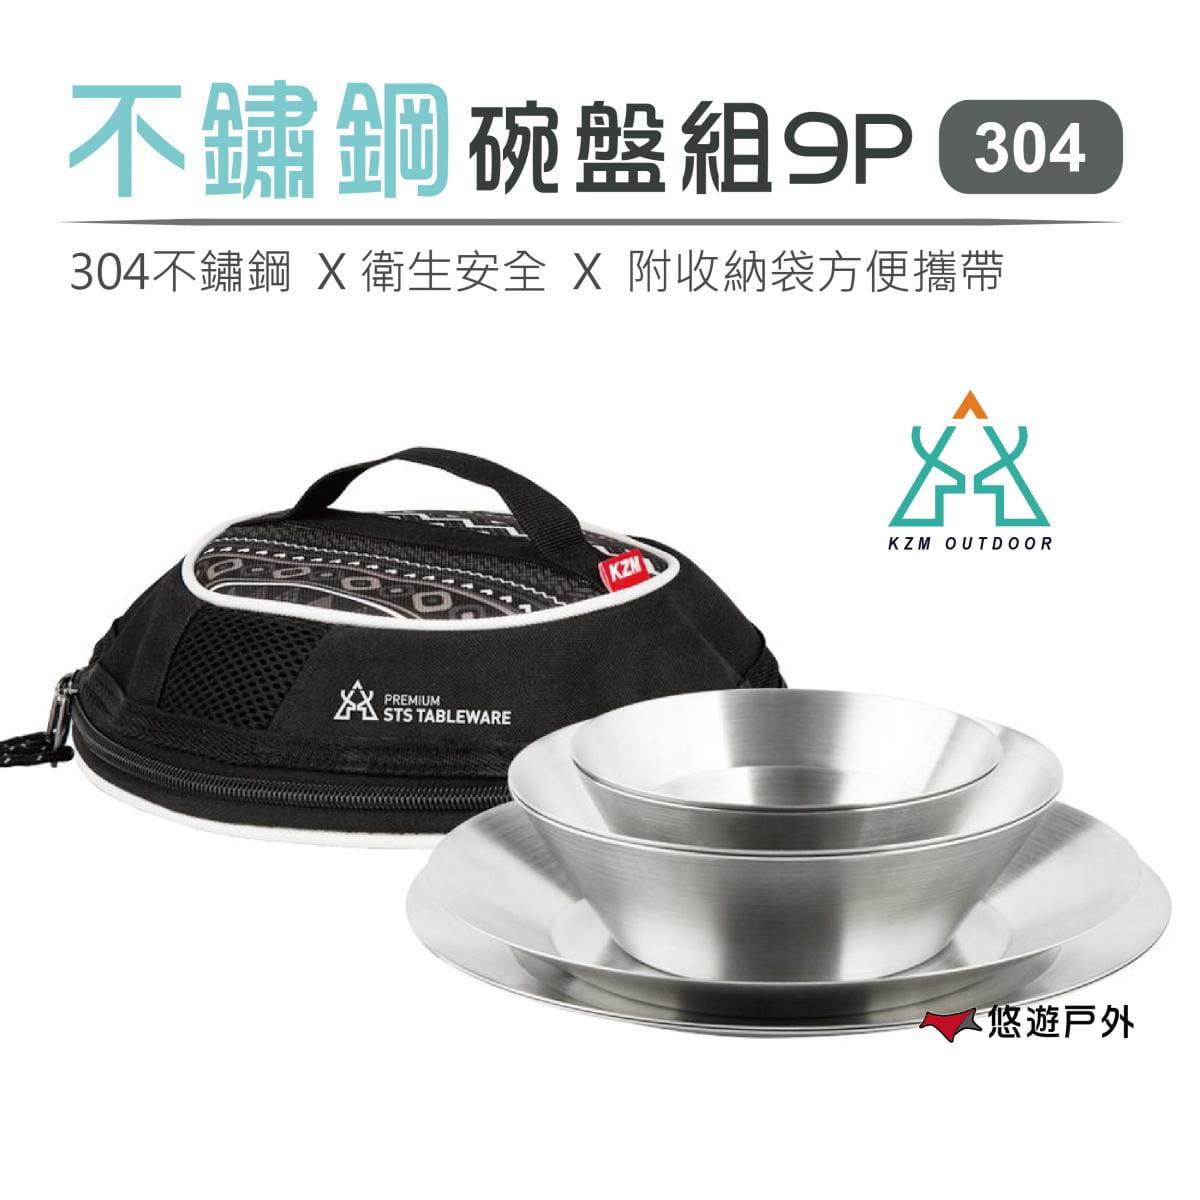 【KAZMI】304不鏽鋼碗盤組9P戶外餐具 (悠遊戶外) 0